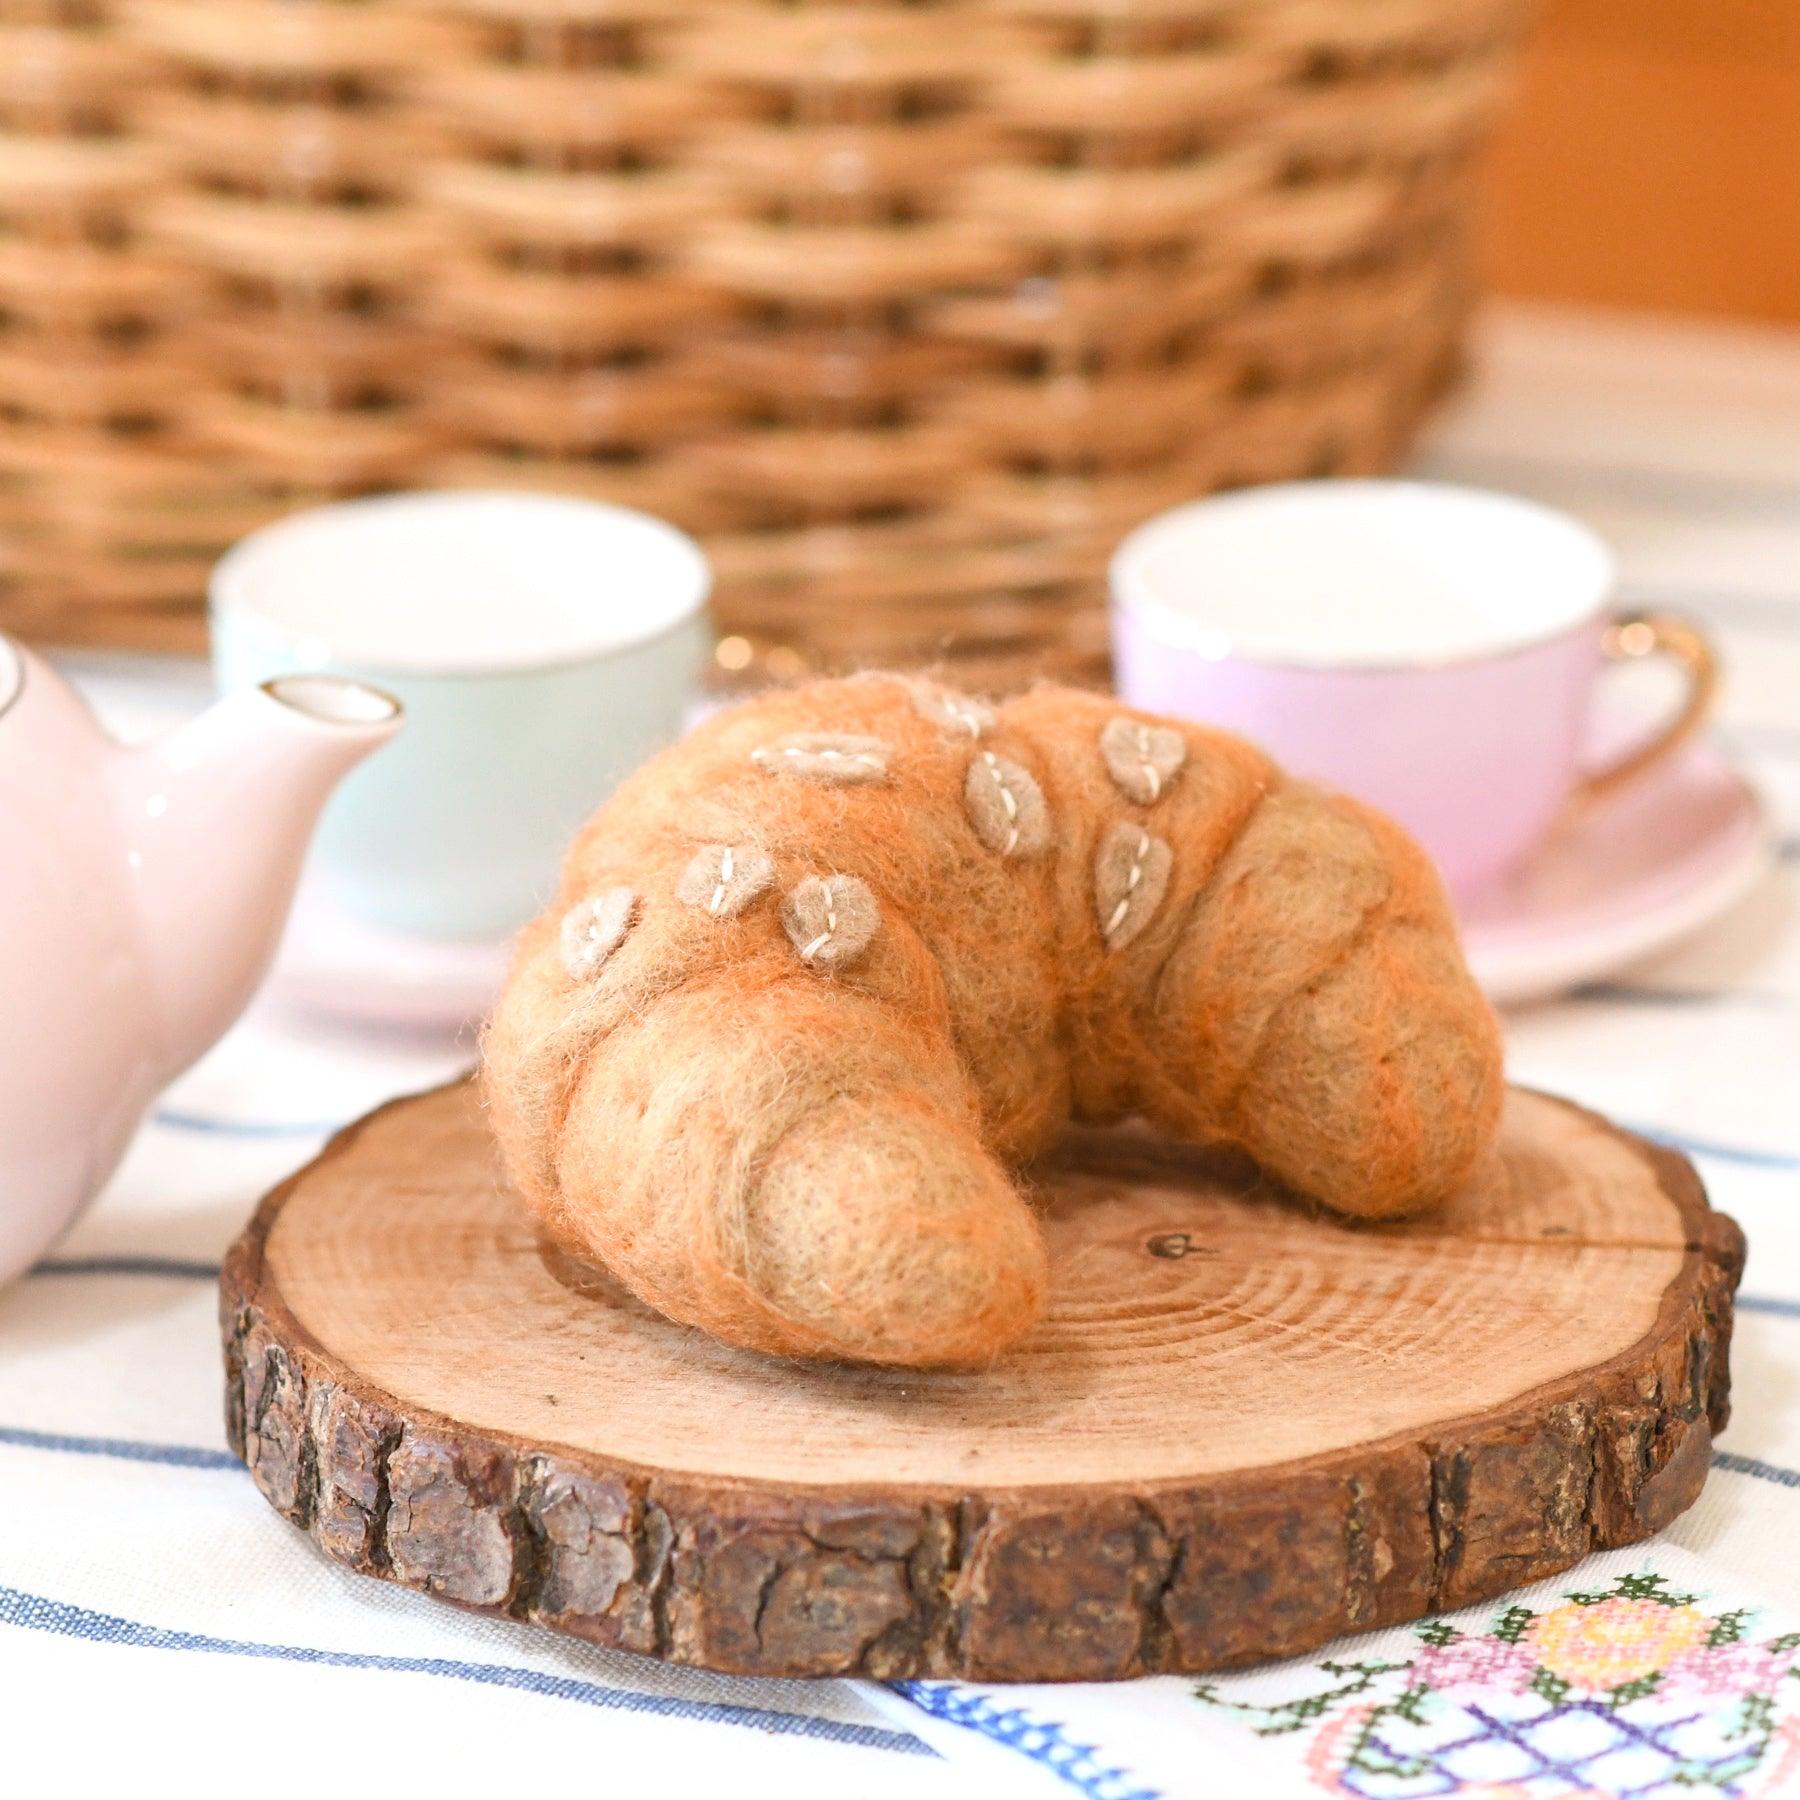 Felt Almond Croissant - Tara Treasures